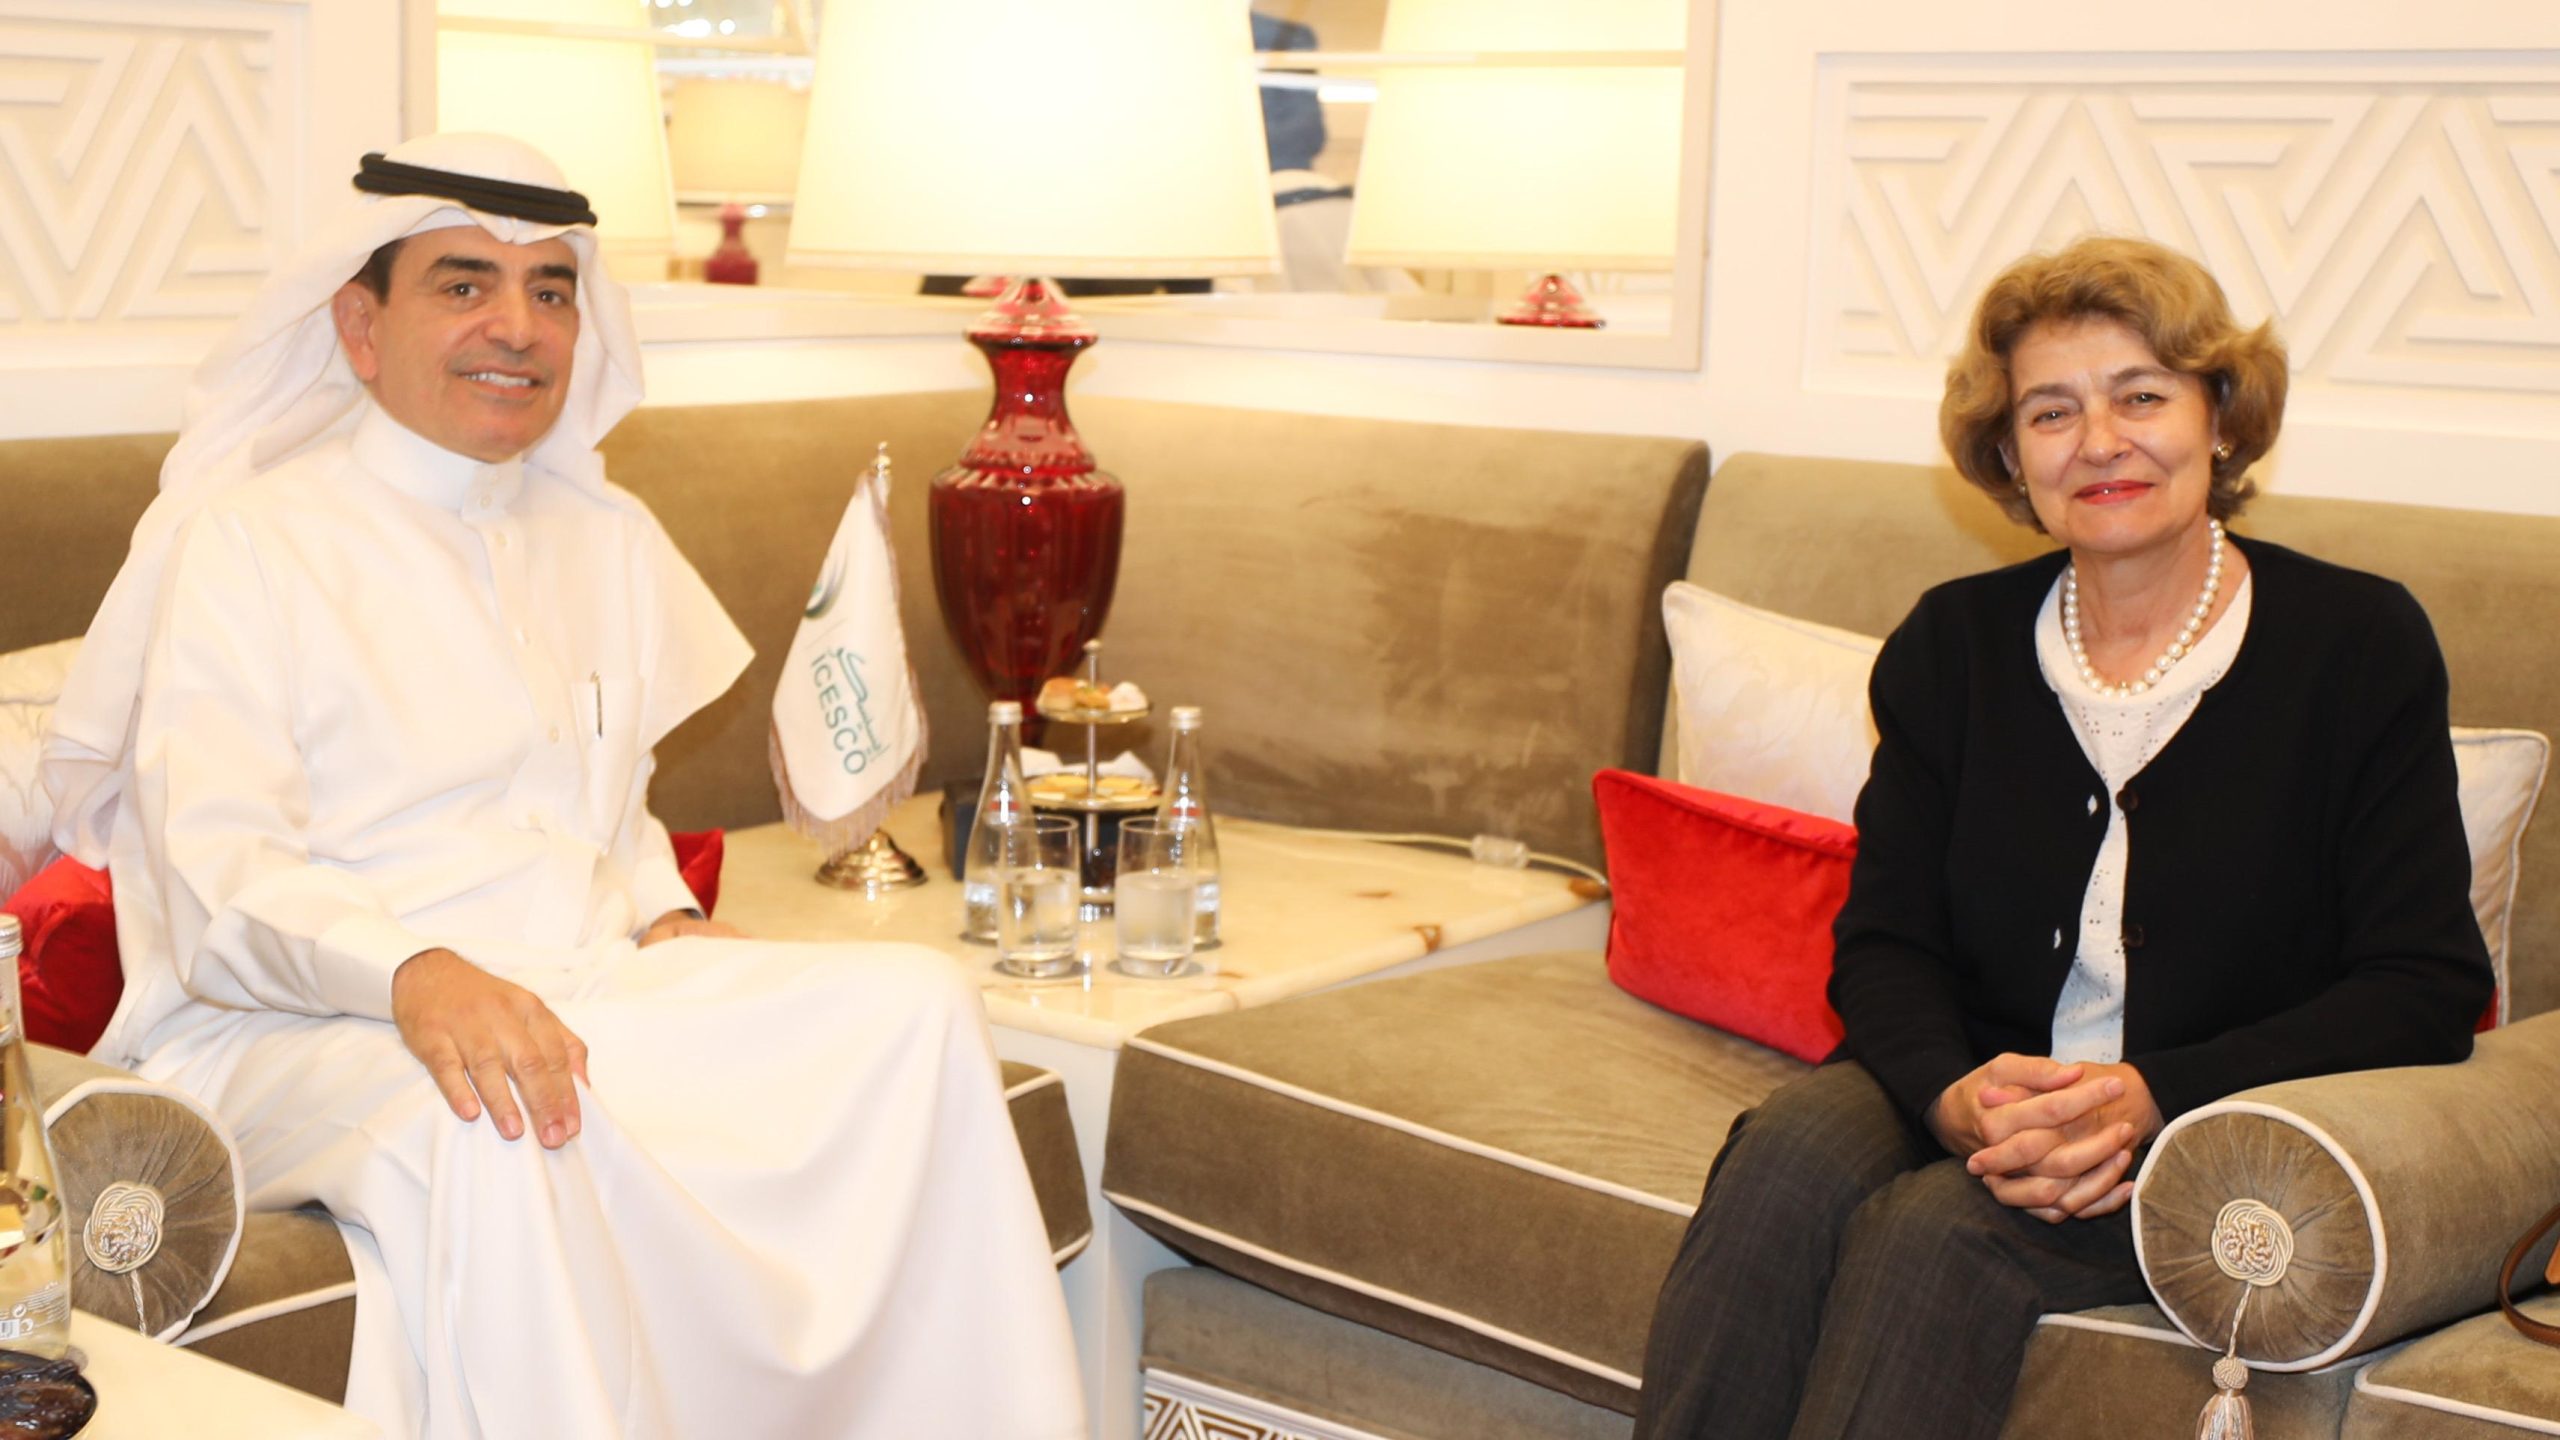 ICESCO Director-General Meets Former UNESCO Director-General in Doha